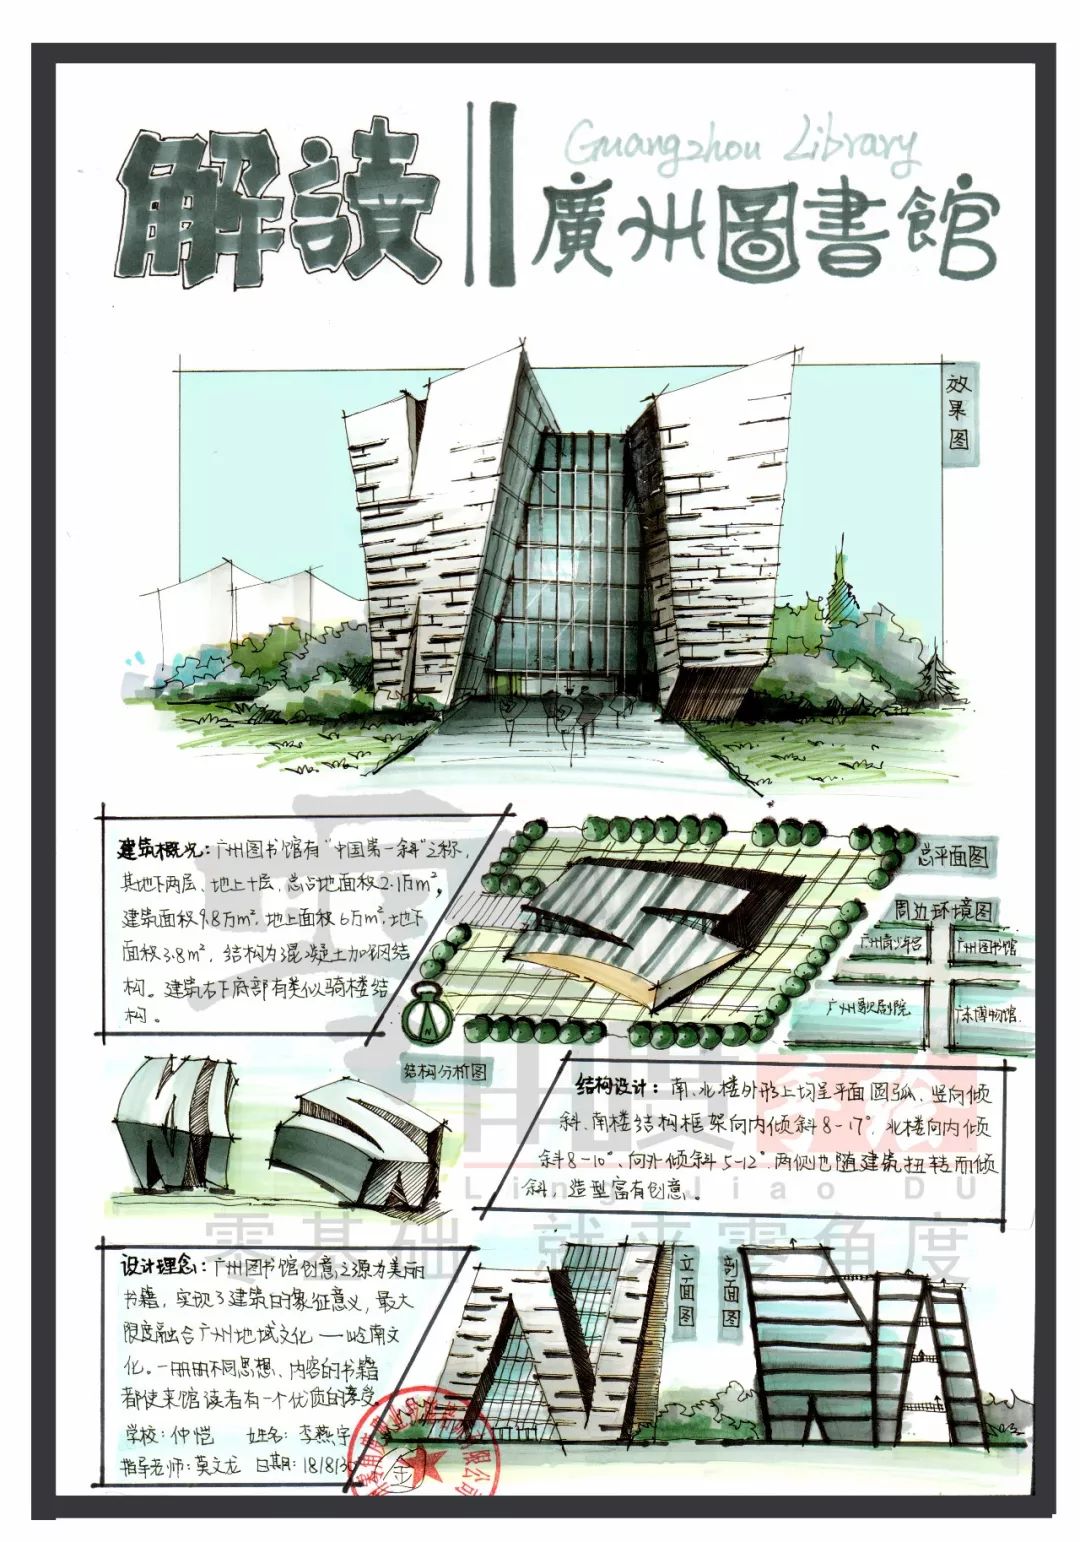 今日建筑解读广州图书馆